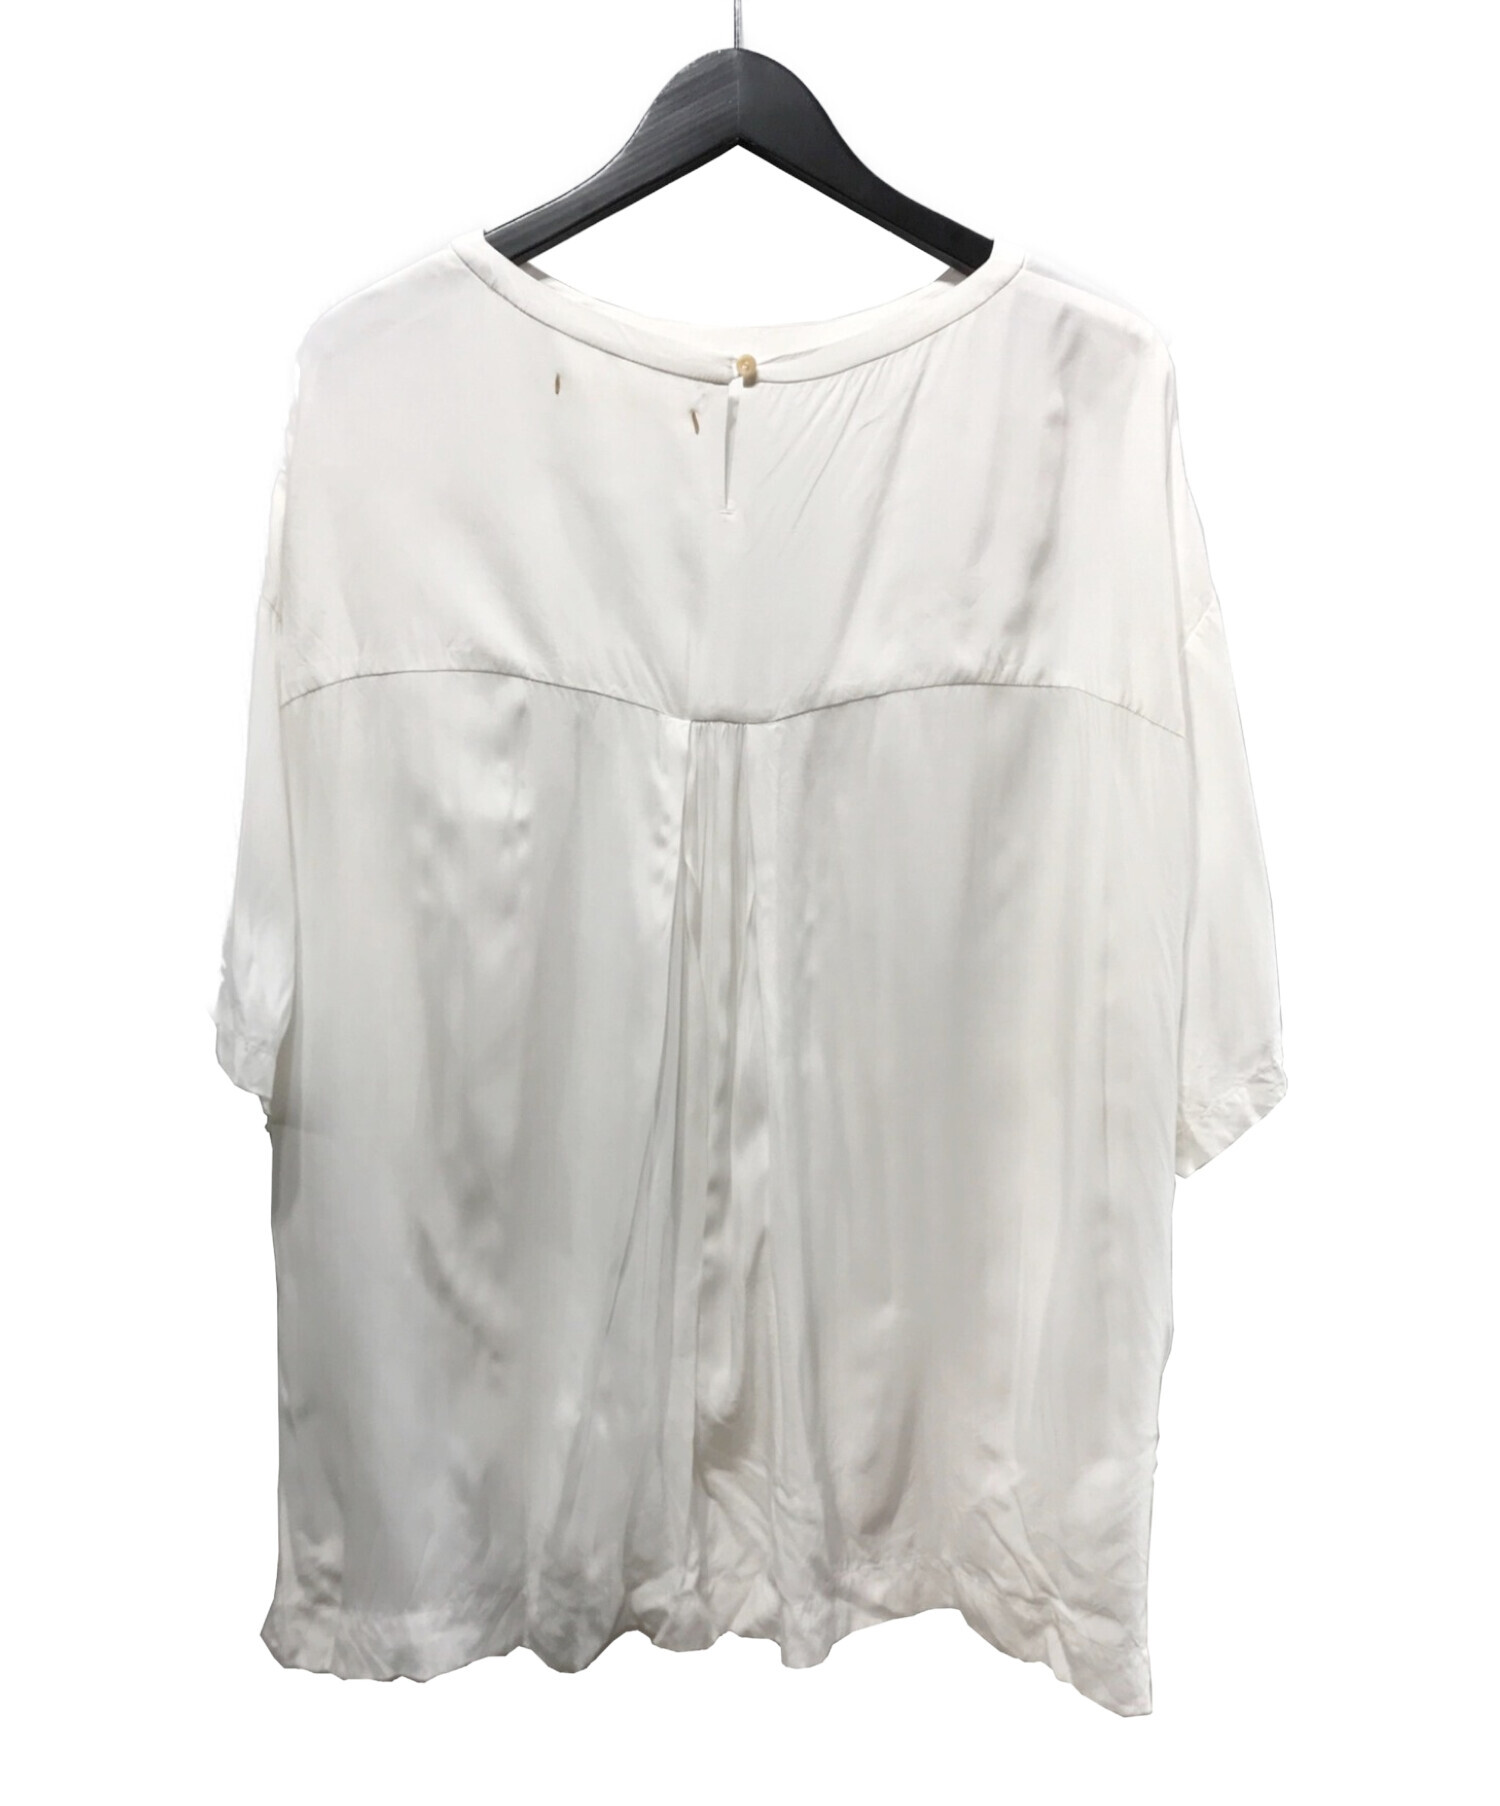 SUZUKI TAKAYUKI (スズキタカユキ) pullover blouse プルオーバーブラウス ホワイト サイズ:Free